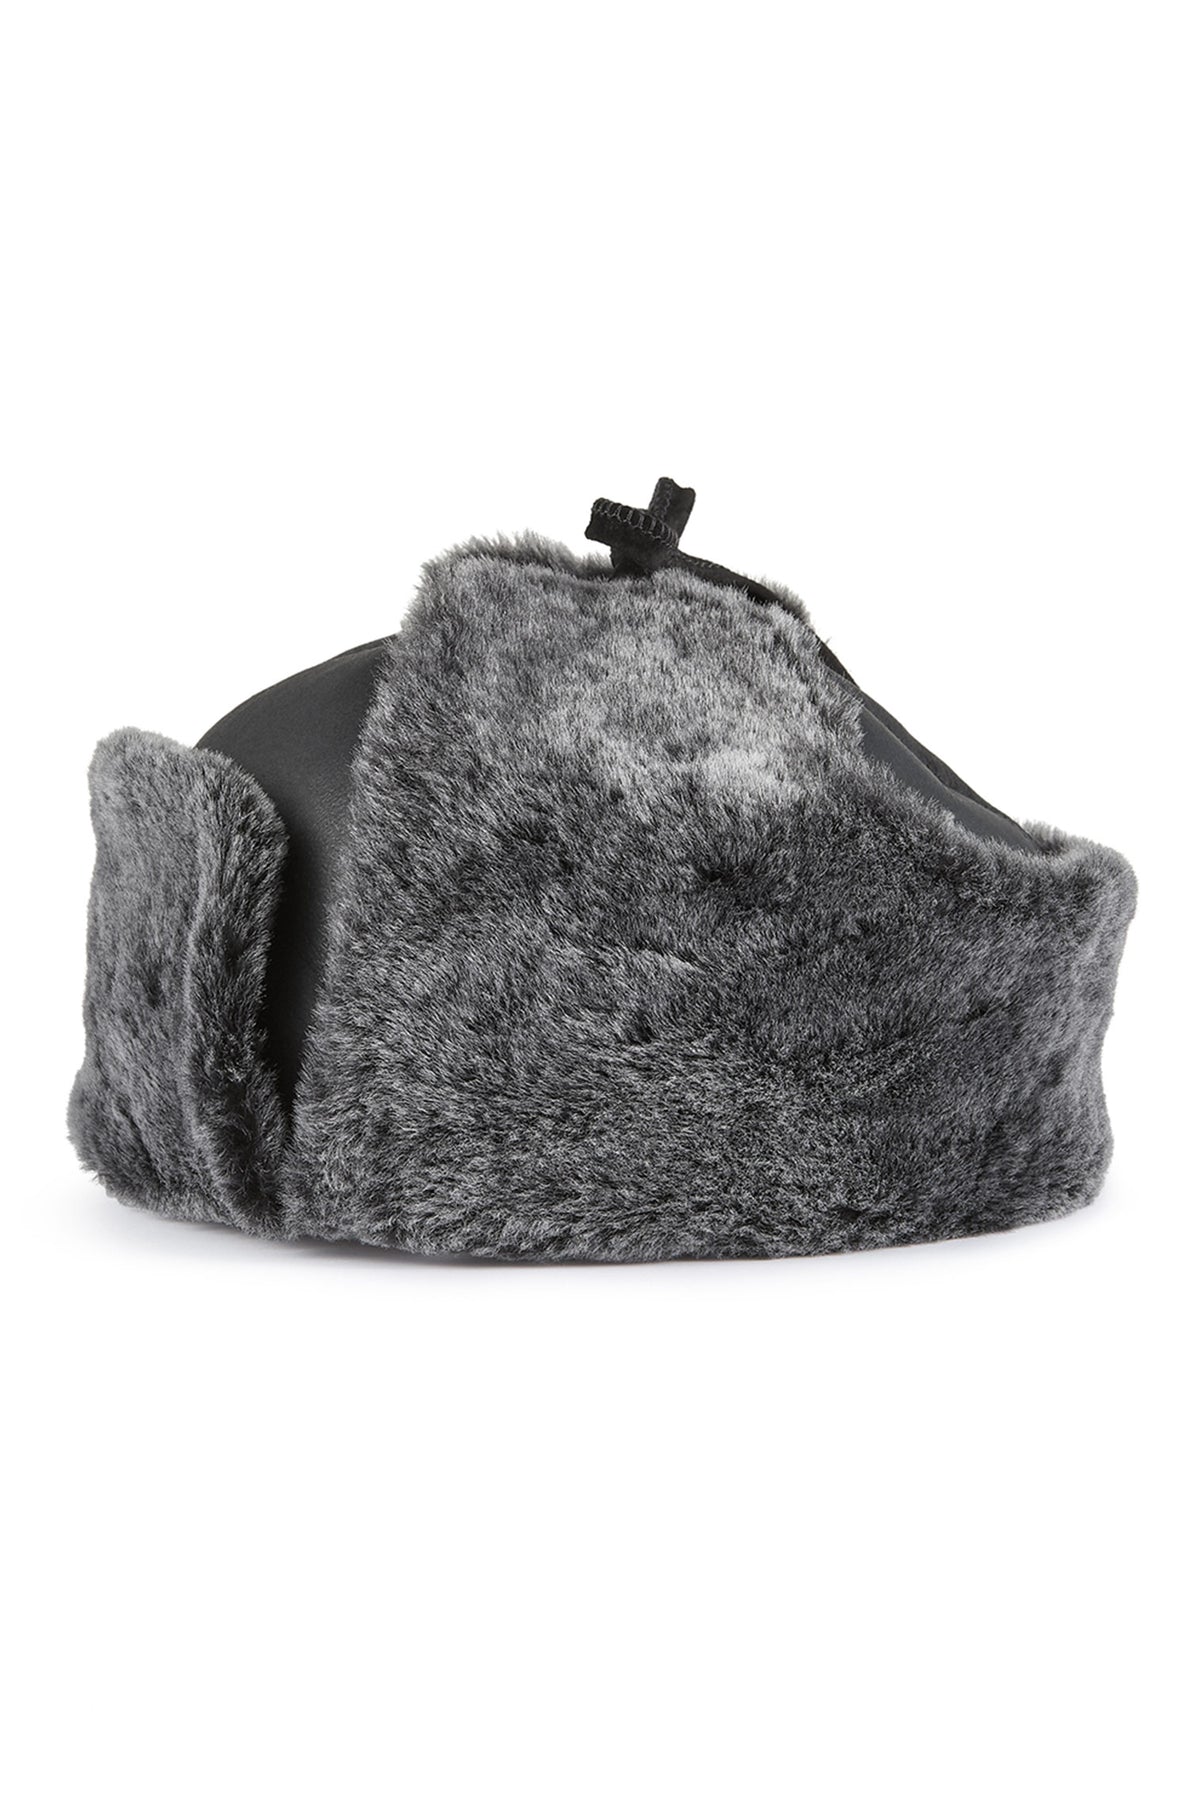 Ottawa Sheepskin Hat - Lock & Co. Hats for Men & Women